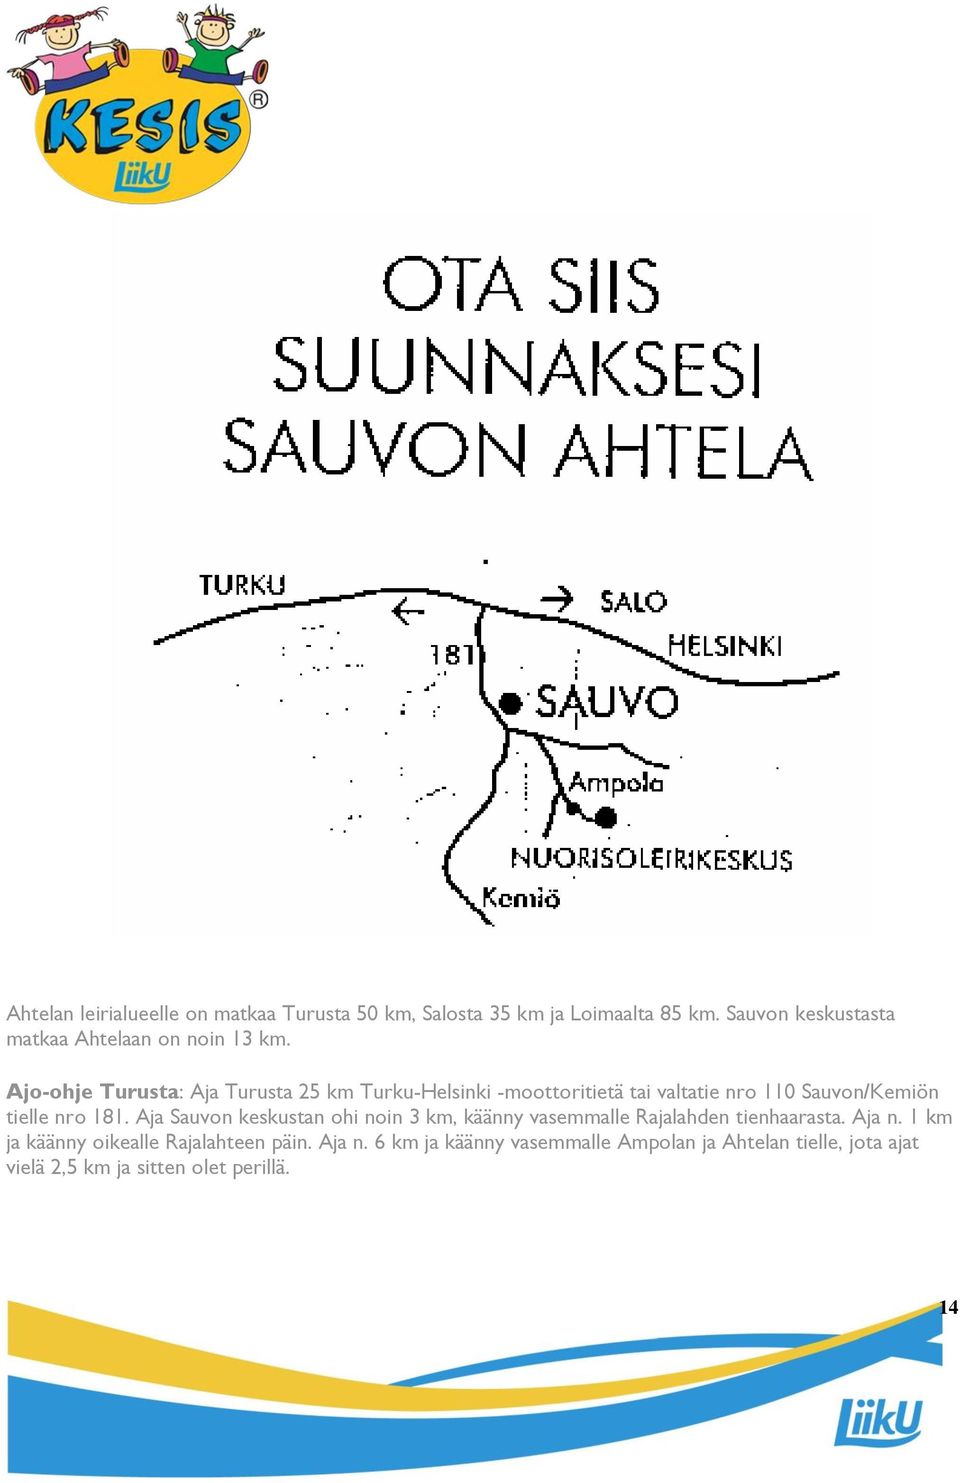 Ajo-ohje Turusta: Aja Turusta 25 km Turku-Helsinki -moottoritietä tai valtatie nro 110 Sauvon/Kemiön tielle nro 181.